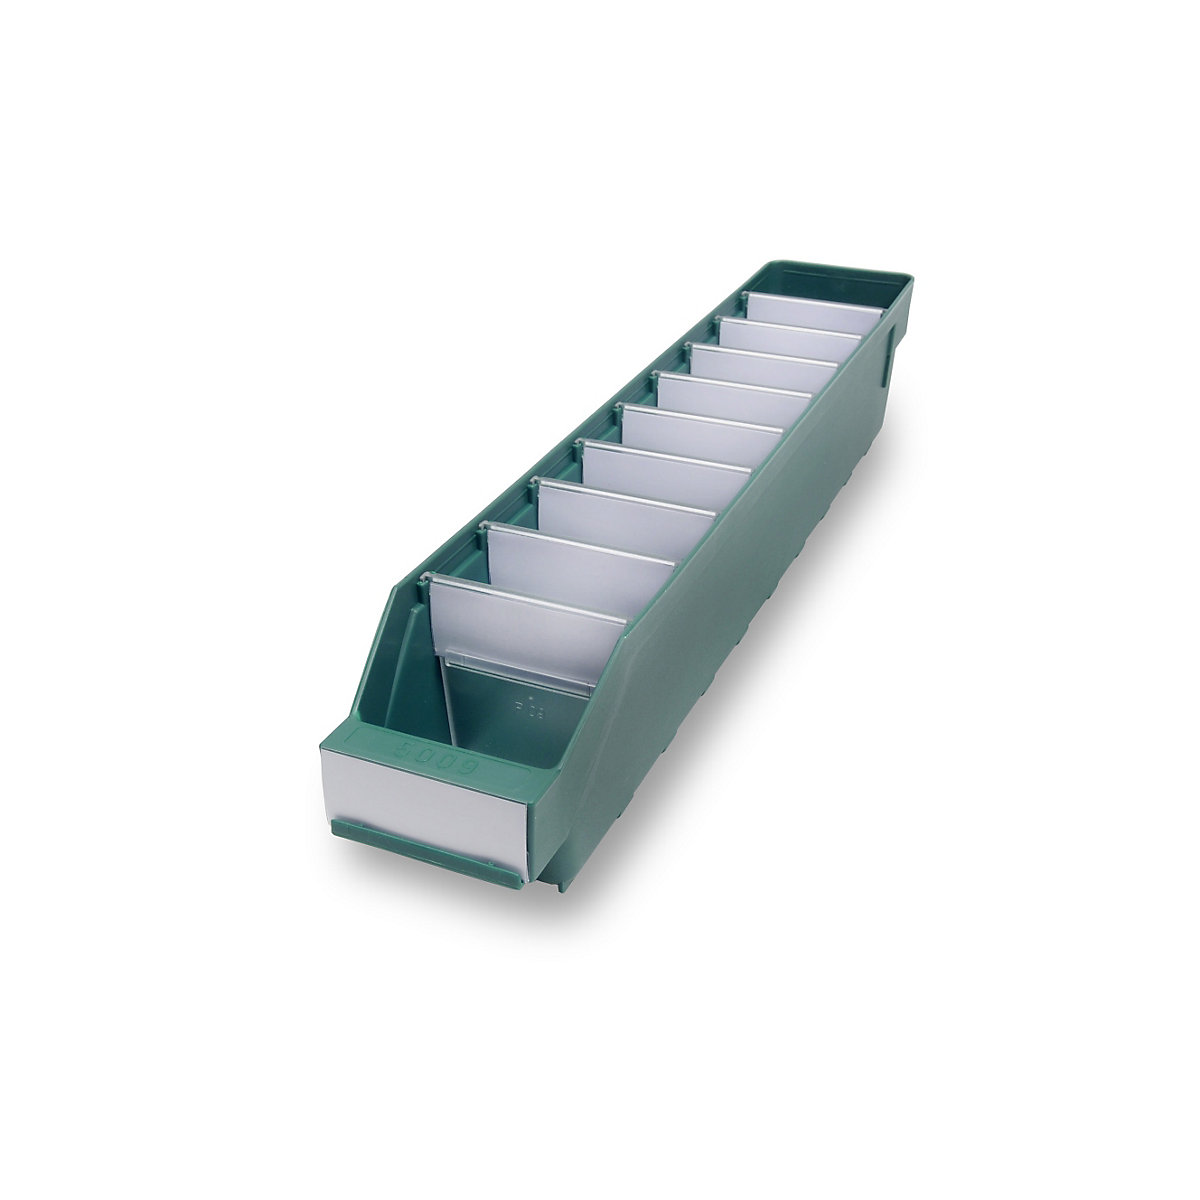 STEMO Regalkasten aus hochschlagfestem Polypropylen, grün, LxBxH 500 x 90 x 95 mm, VE 40 Stk